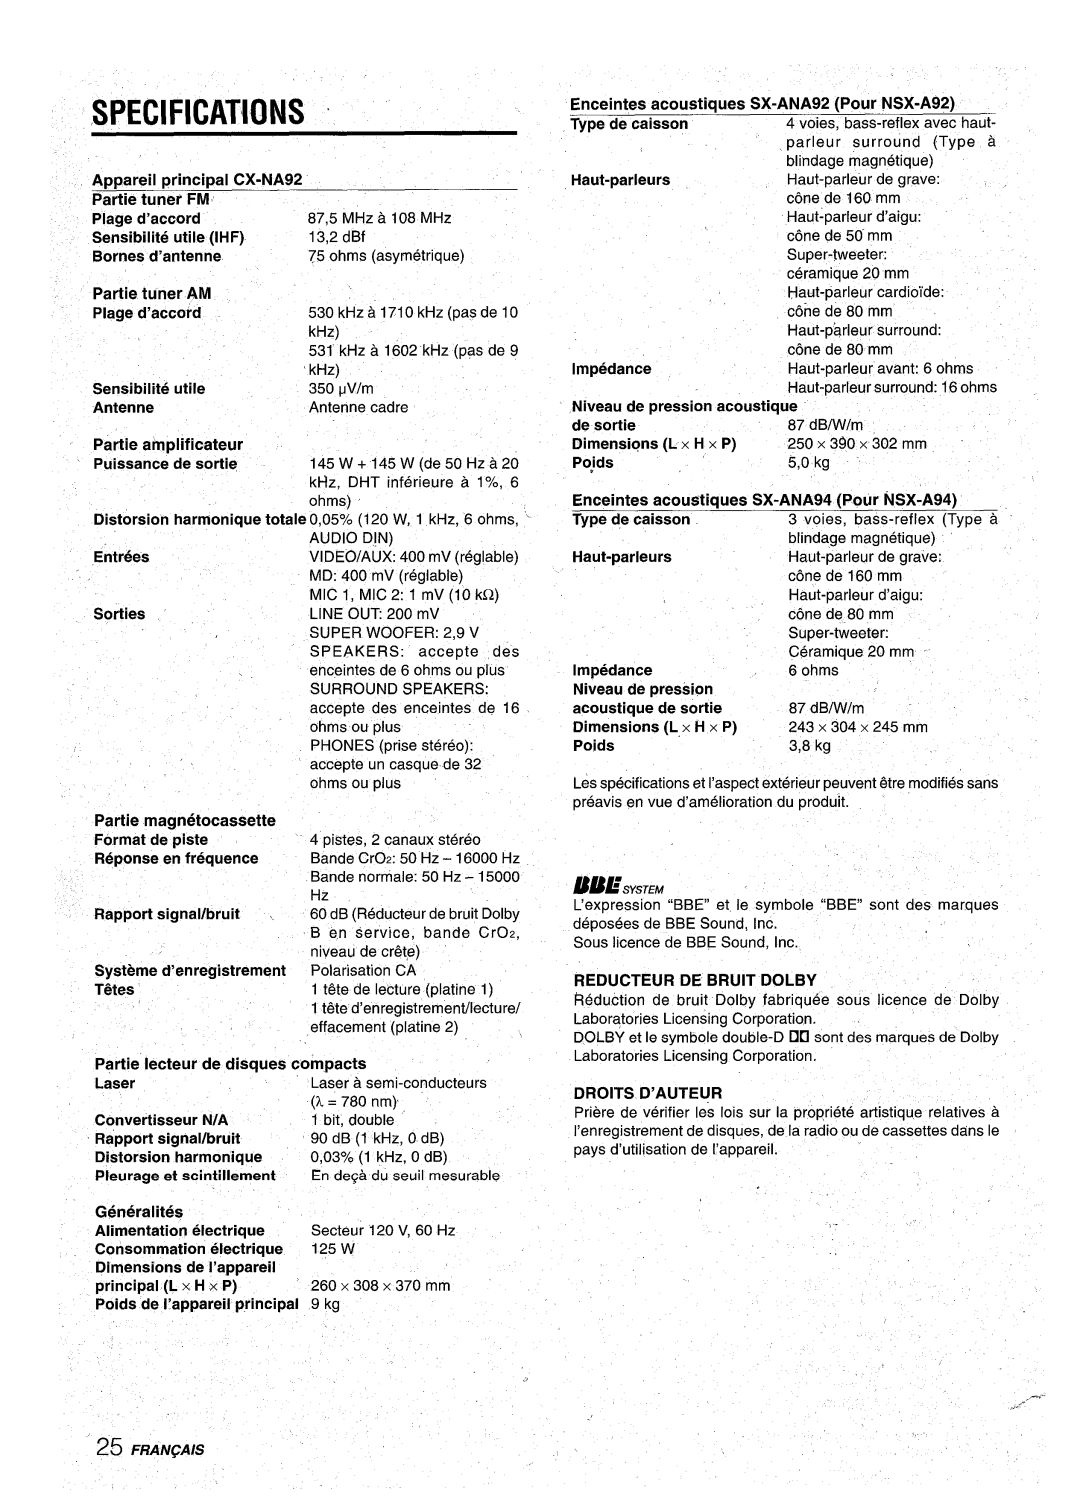 Aiwa manual Specifications ~, Appareil principal CX-NA92 Partie tuner FM, Partie tuner AM, Partie magnetocassette 